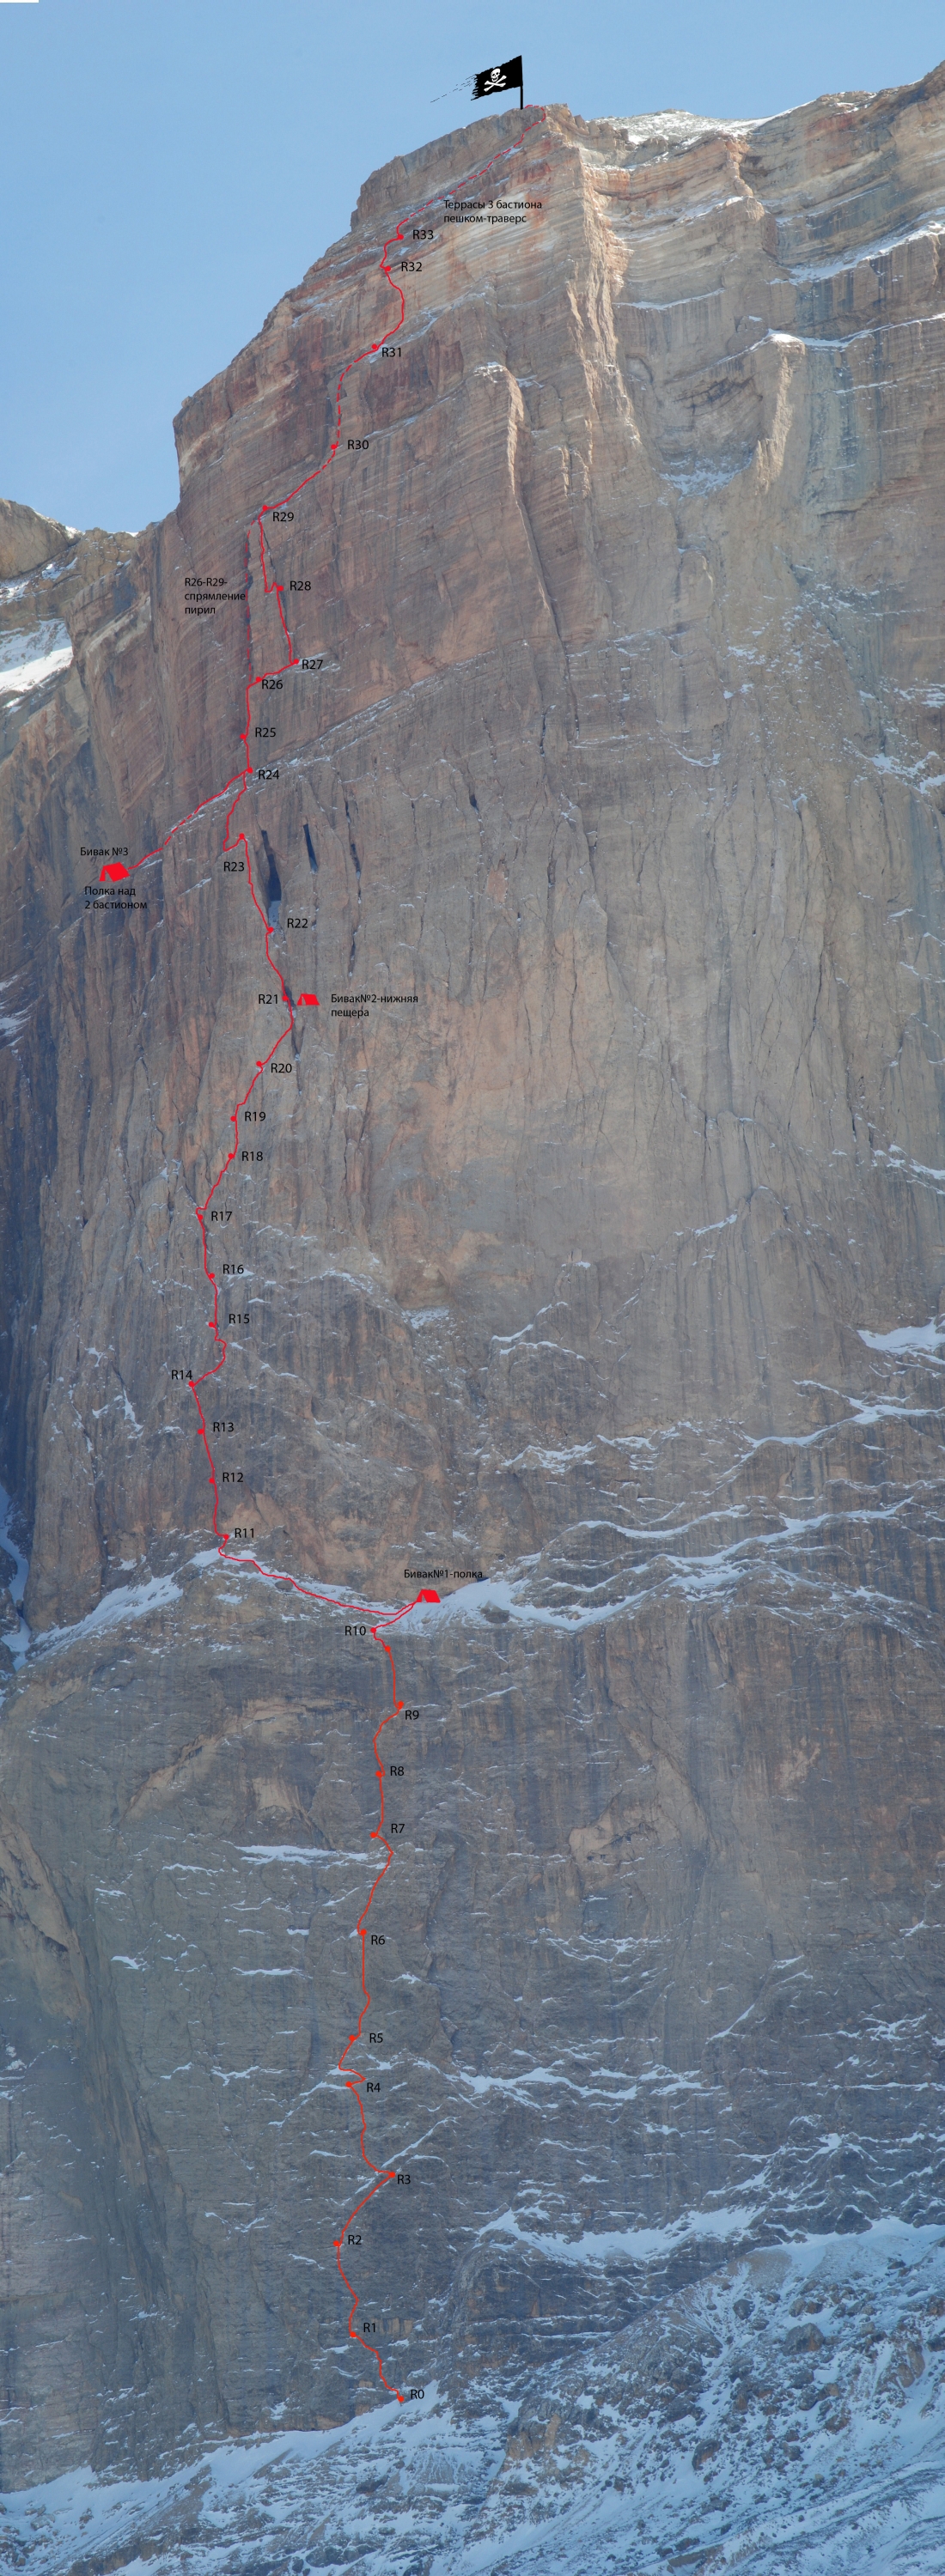 Ц.Бастион. Новый маршрут на вершину Ерыдаг: 1-я Западная по центру левой части СЗ стены.